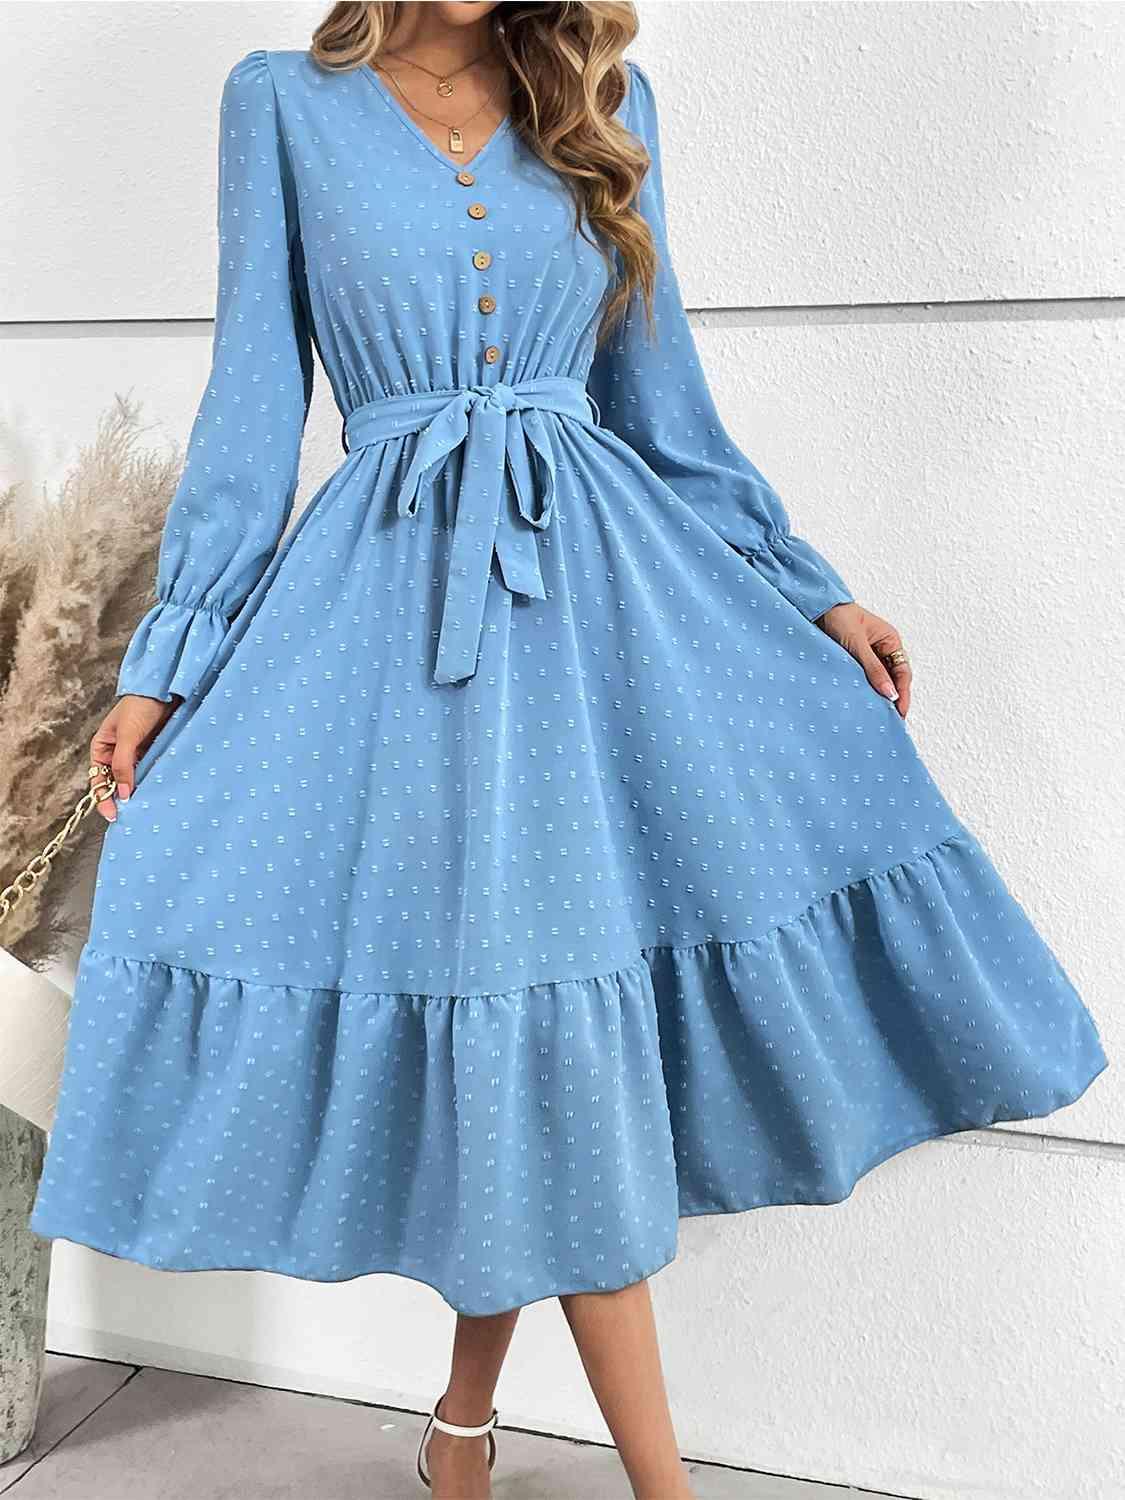 a woman wearing a blue polka dot dress